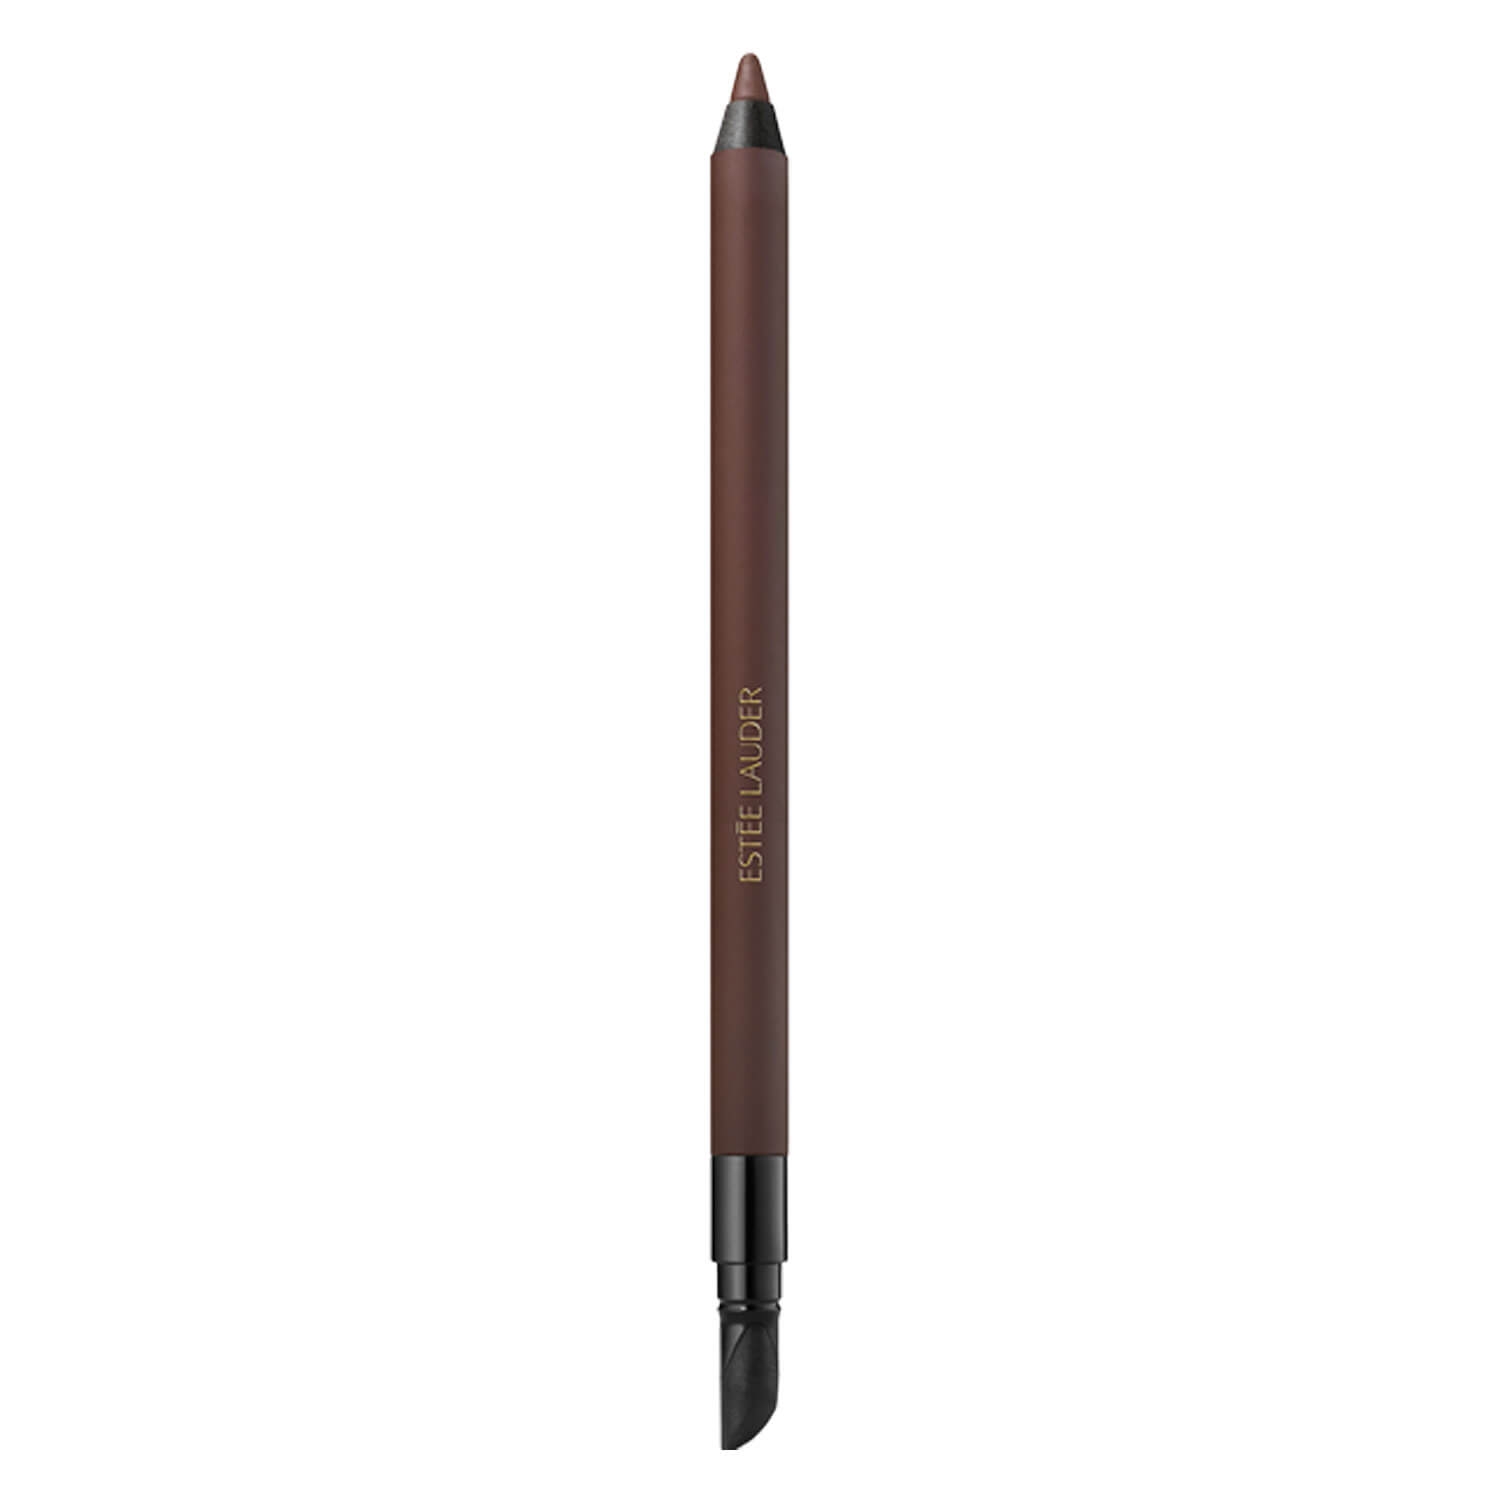 Produktbild von Double Wear - 24H Waterproof Gel Eye Pencil Cocoa